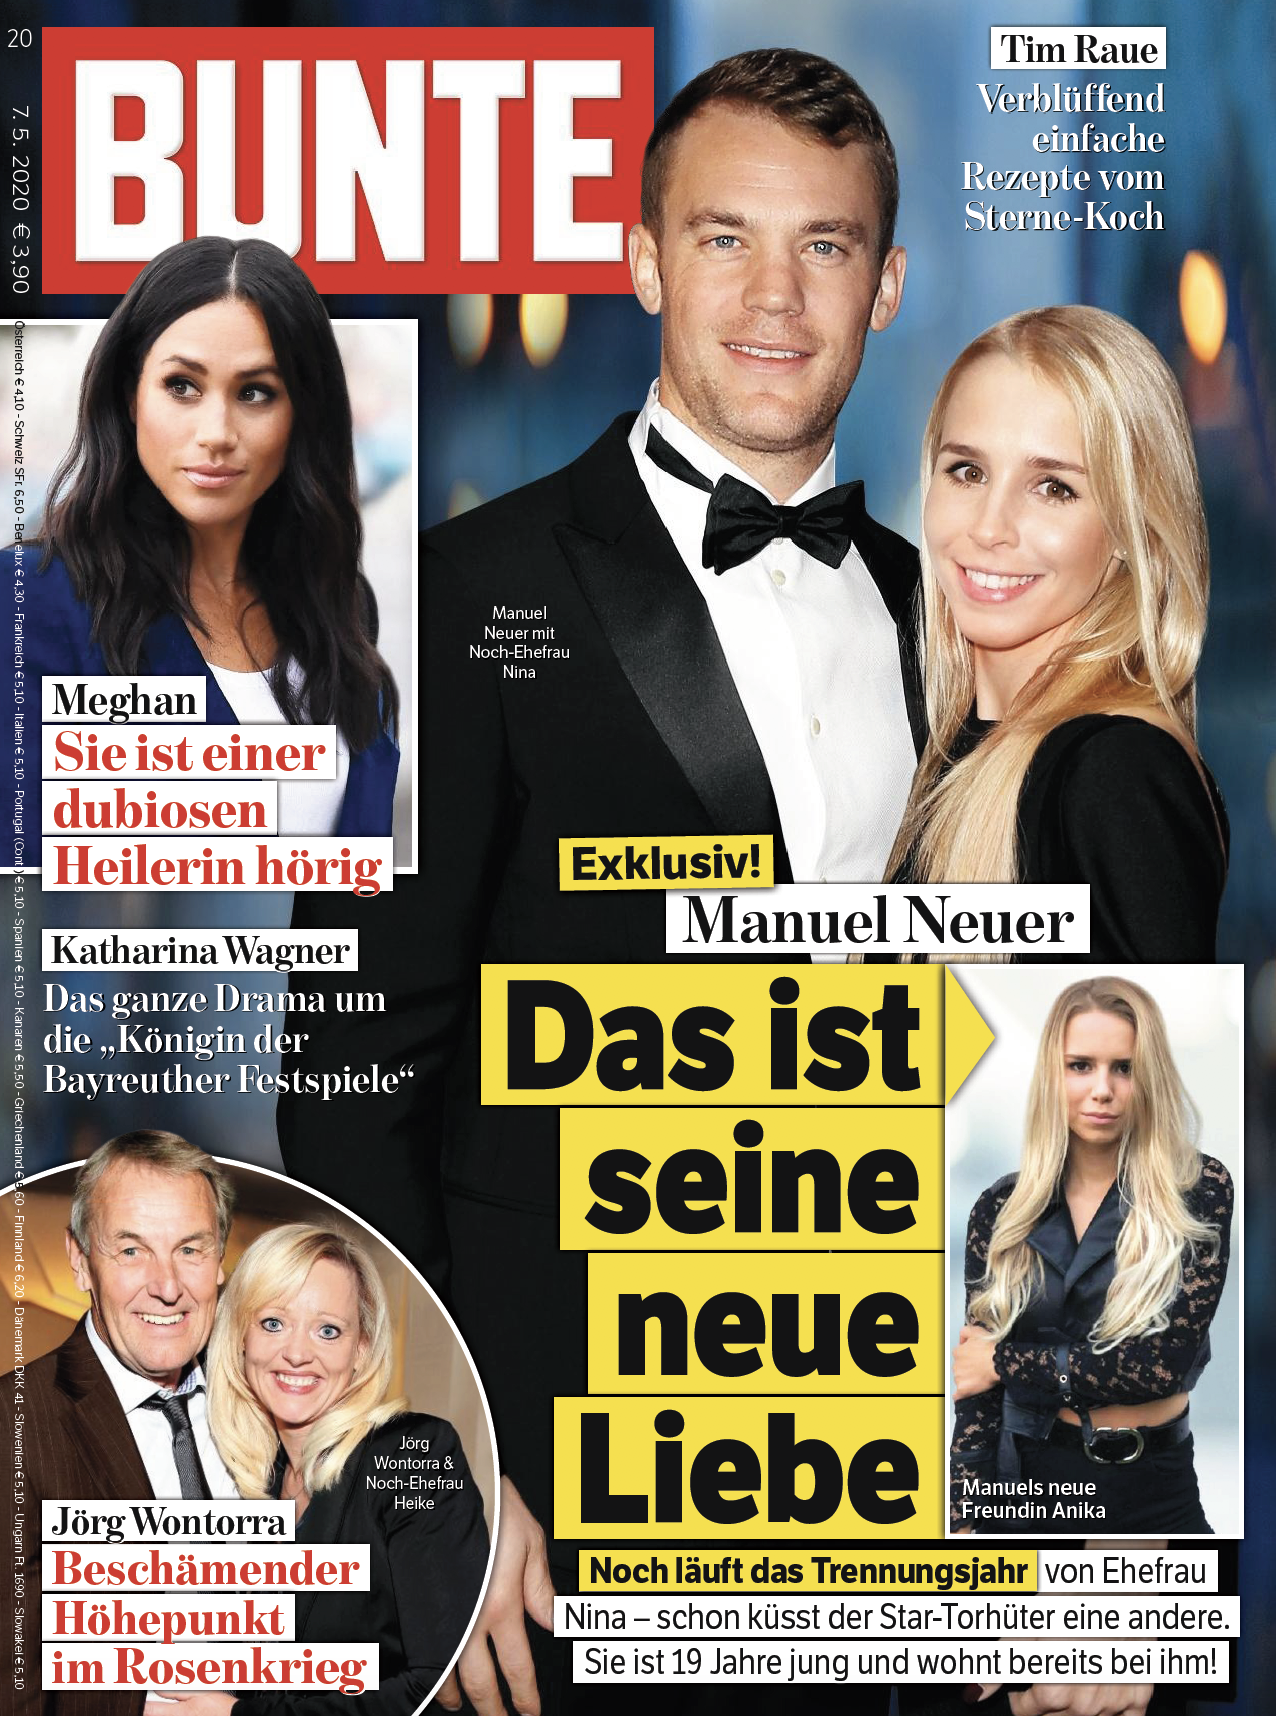 Neuer ljubi 15 godina mlađu, a ona sliči njegovoj bivšoj ženi...